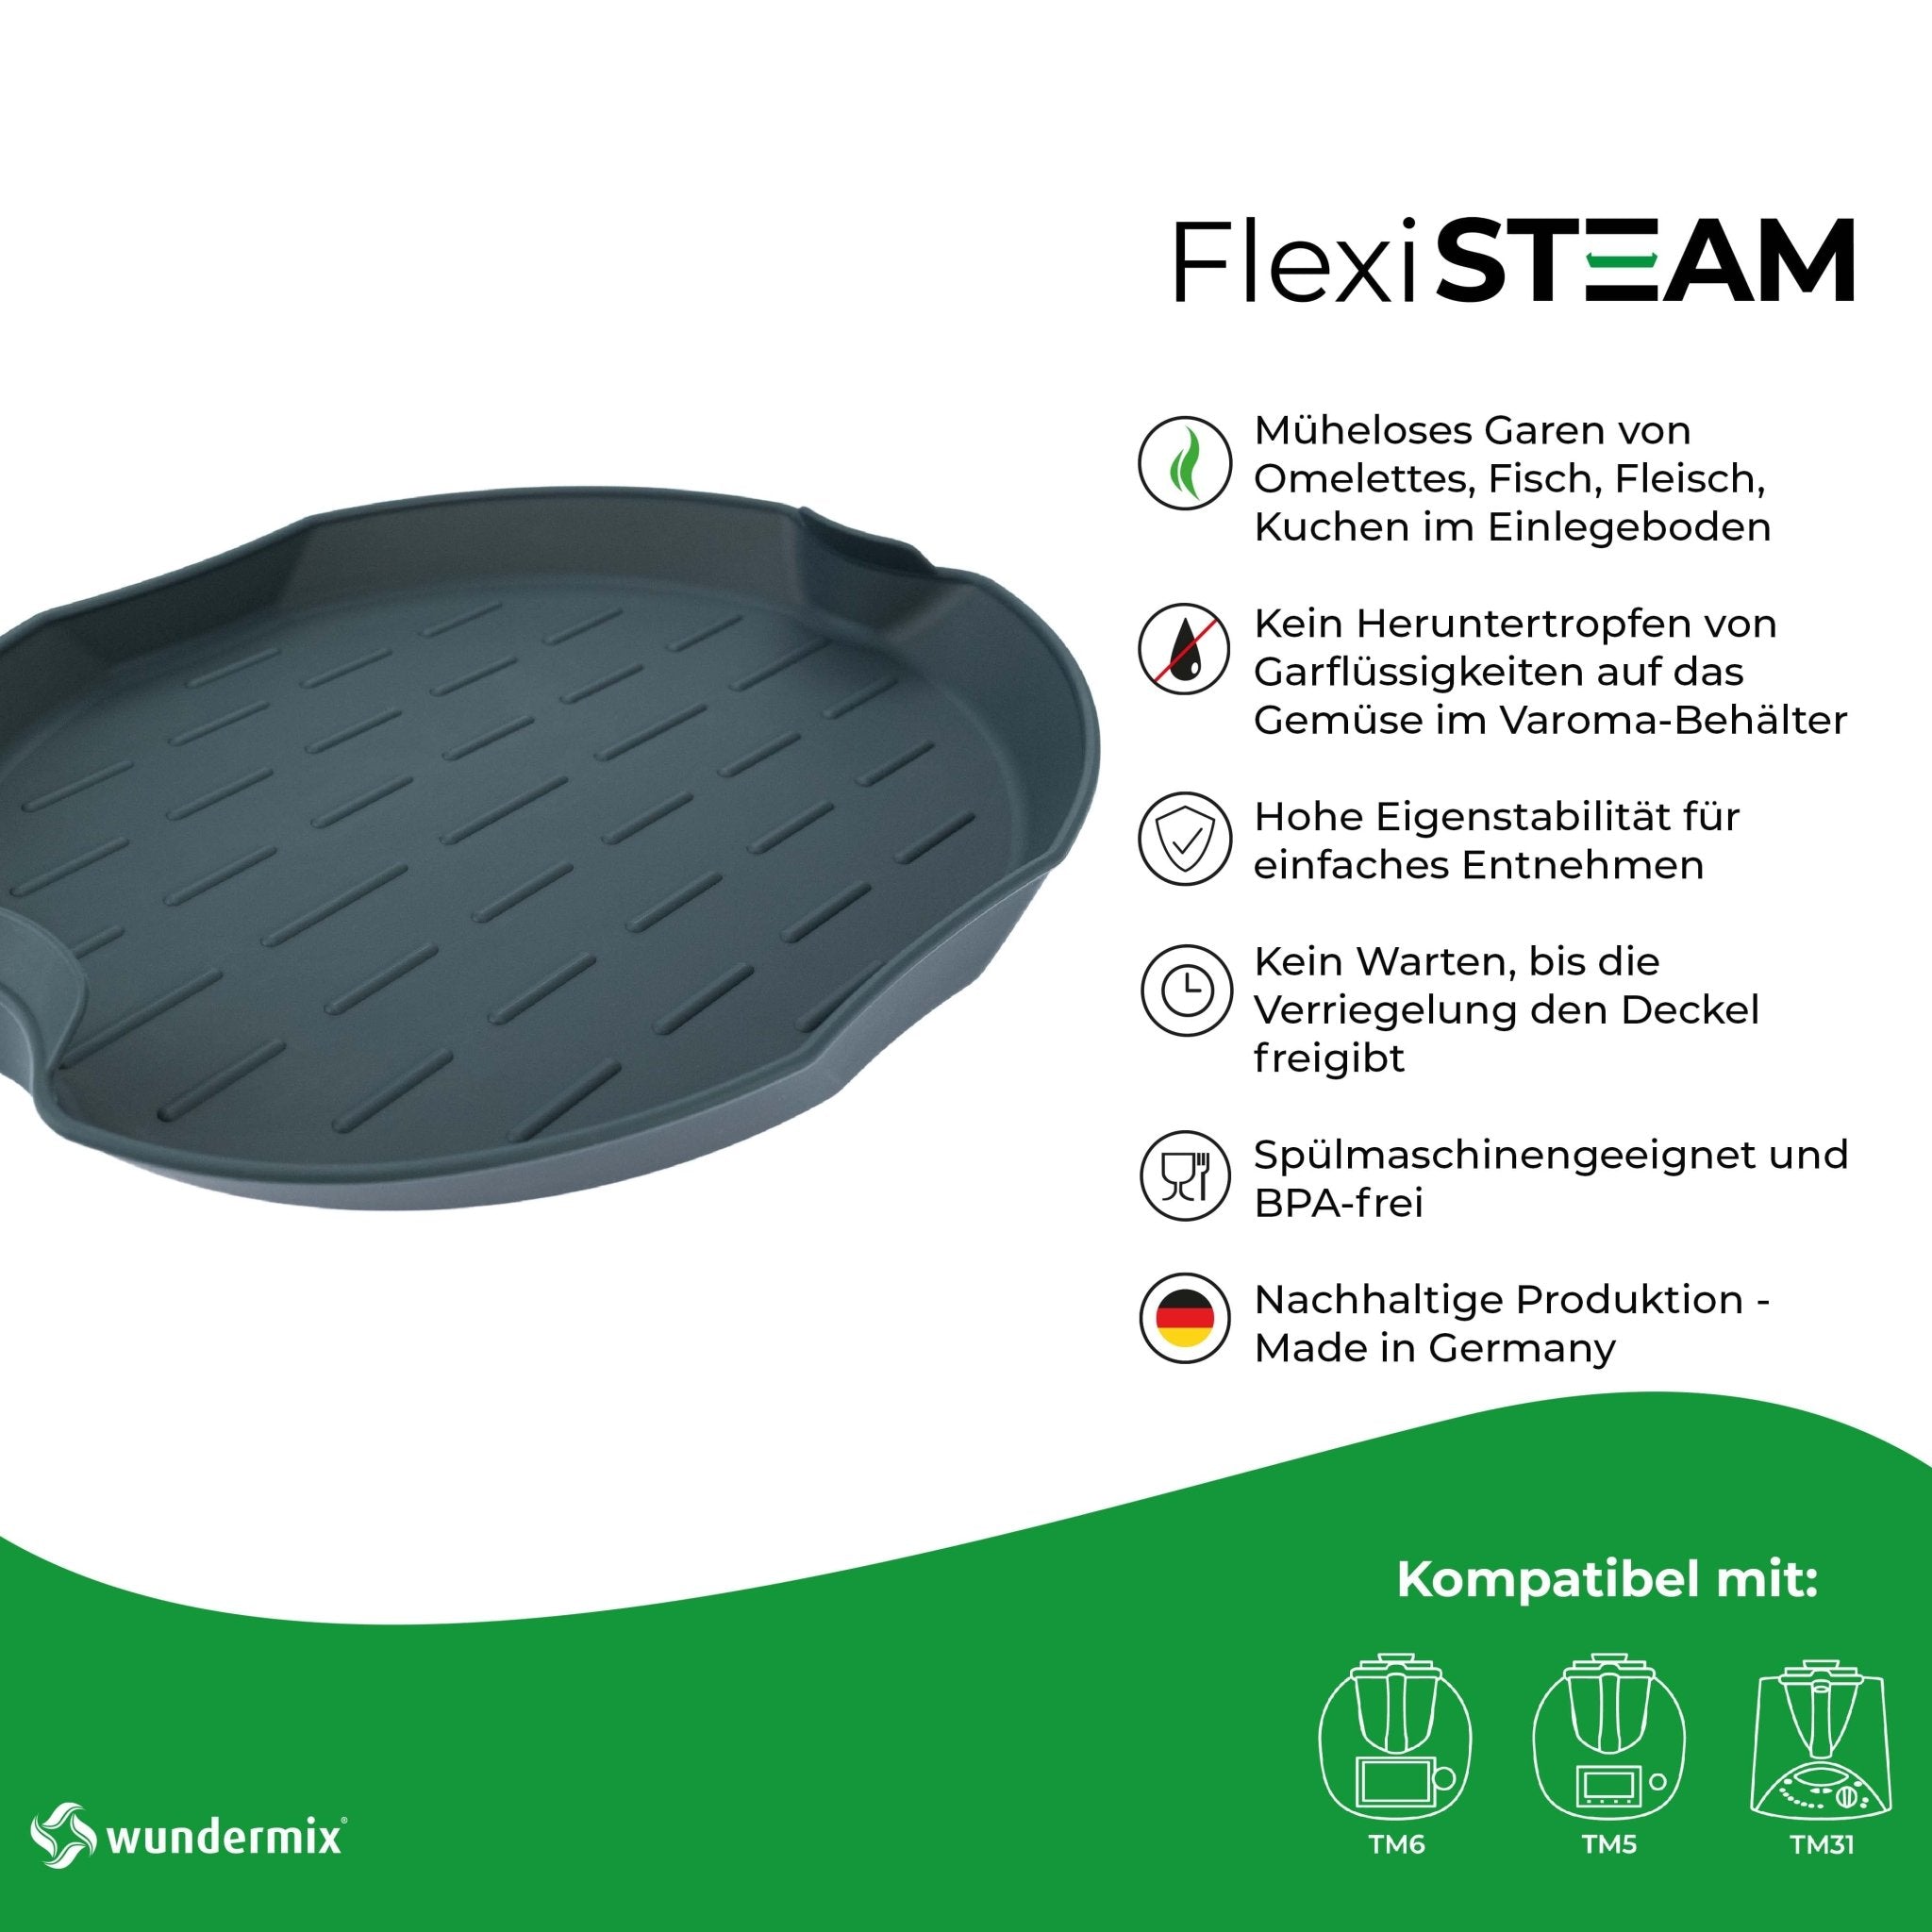 FlexiSteam® | Silikon-Auflaufform für Varoma-Einlegeboden | Thermomix TM6, TM5, TM31 und TM Friend - Wundermix GmbH